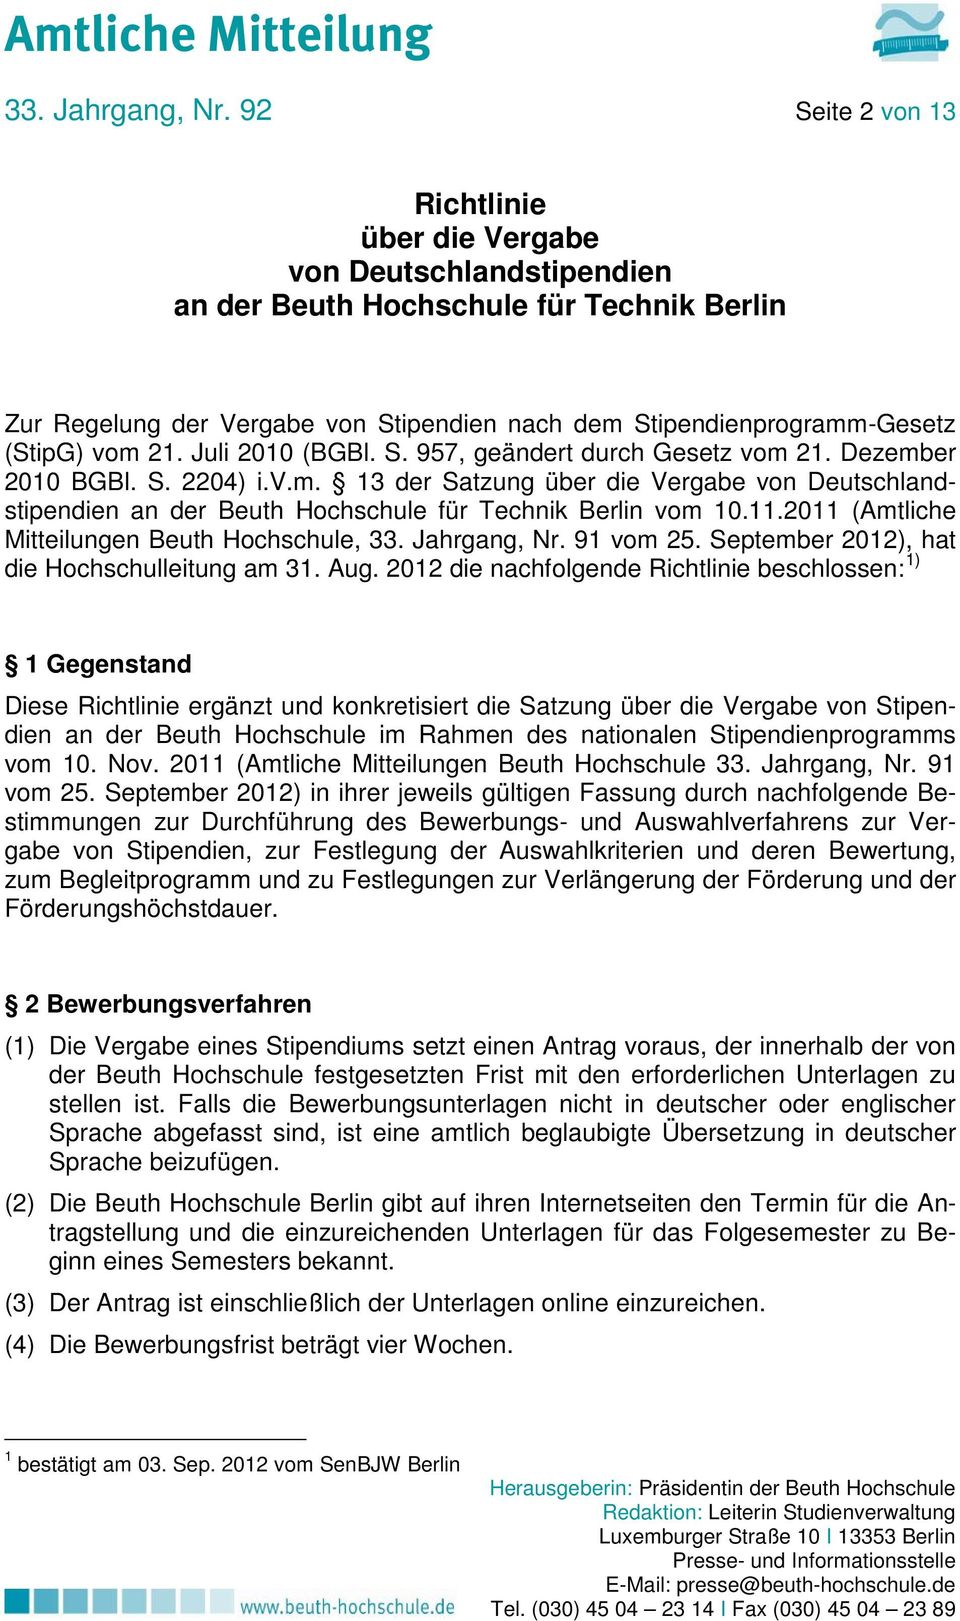 vom 21. Juli 2010 (BGBl. S. 957, geändert durch Gesetz vom 21. Dezember 2010 BGBl. S. 2204) i.v.m. 13 der Satzung über die Vergabe von Deutschlandstipendien an der Beuth Hochschule für Technik Berlin vom 10.